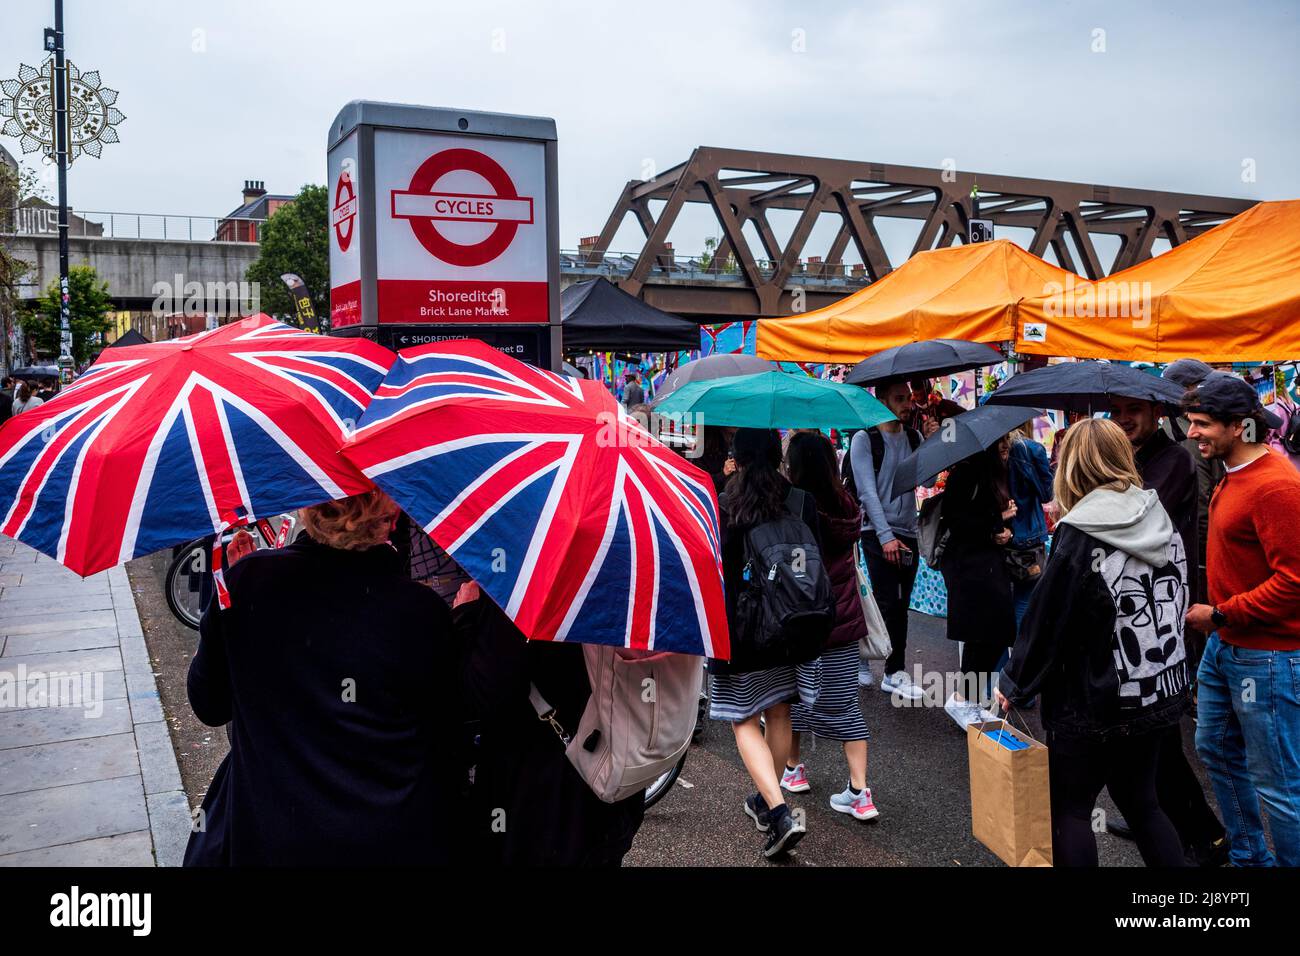 Brick Lane Sunday Market dans l'East End Shoreditch Area de Londres, par temps de pluie. Les amateurs de shopping et les touristes se promeunaient sur Brick Lane avec les parasols Union Jack. Banque D'Images